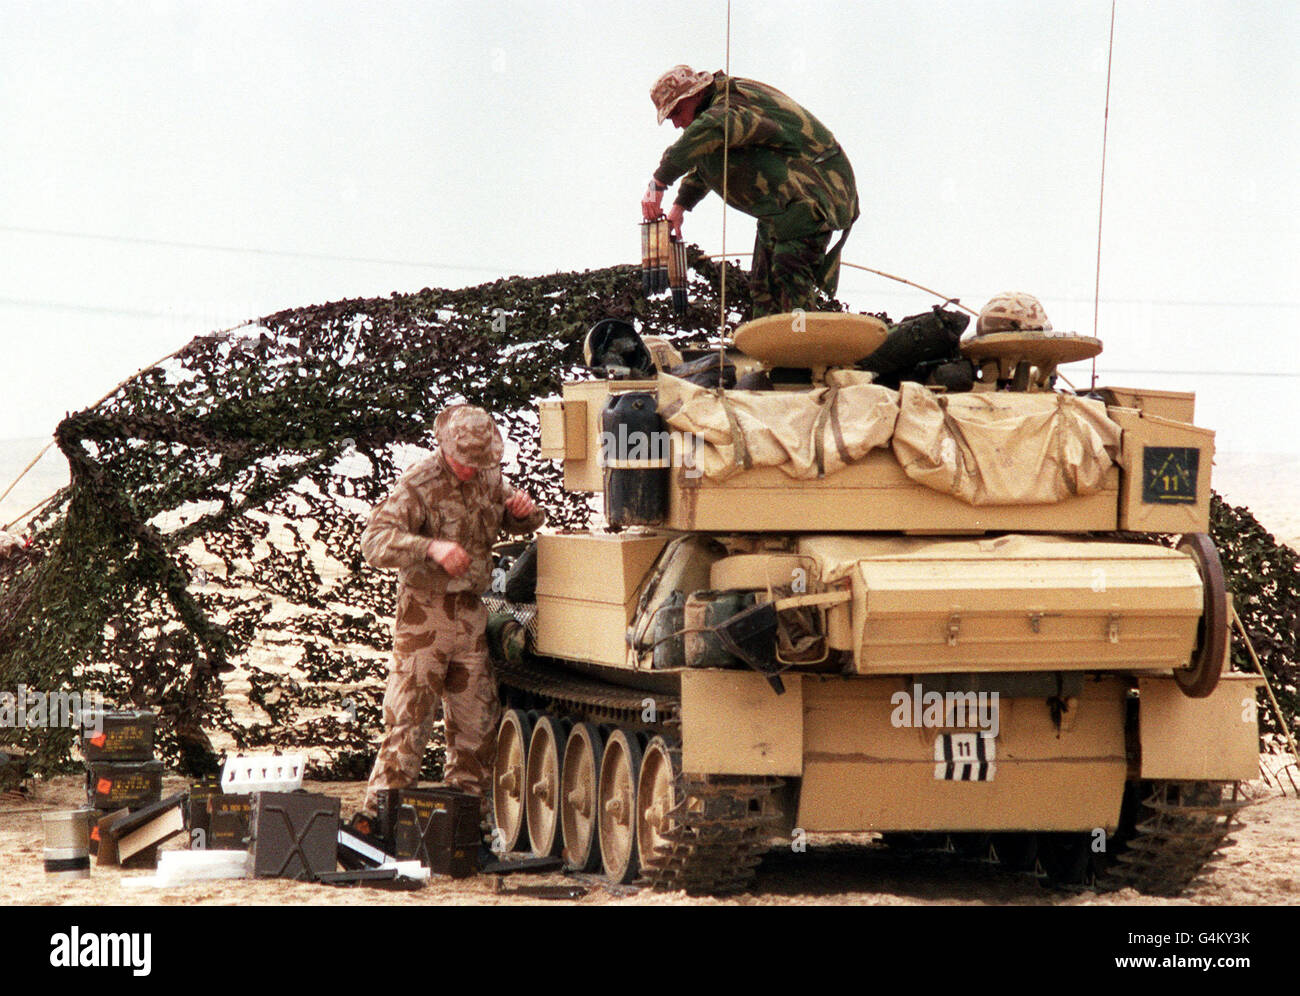 Soldati britannici durante la guerra del Golfo: Un veicolo blindato della Royal Lancers della 16a/5a regina (parte della 7esima Brigata blindata) è caricato con i depositi freschi e le armi nel deserto Saudita arabo durante la guerra del Golfo. Foto Stock